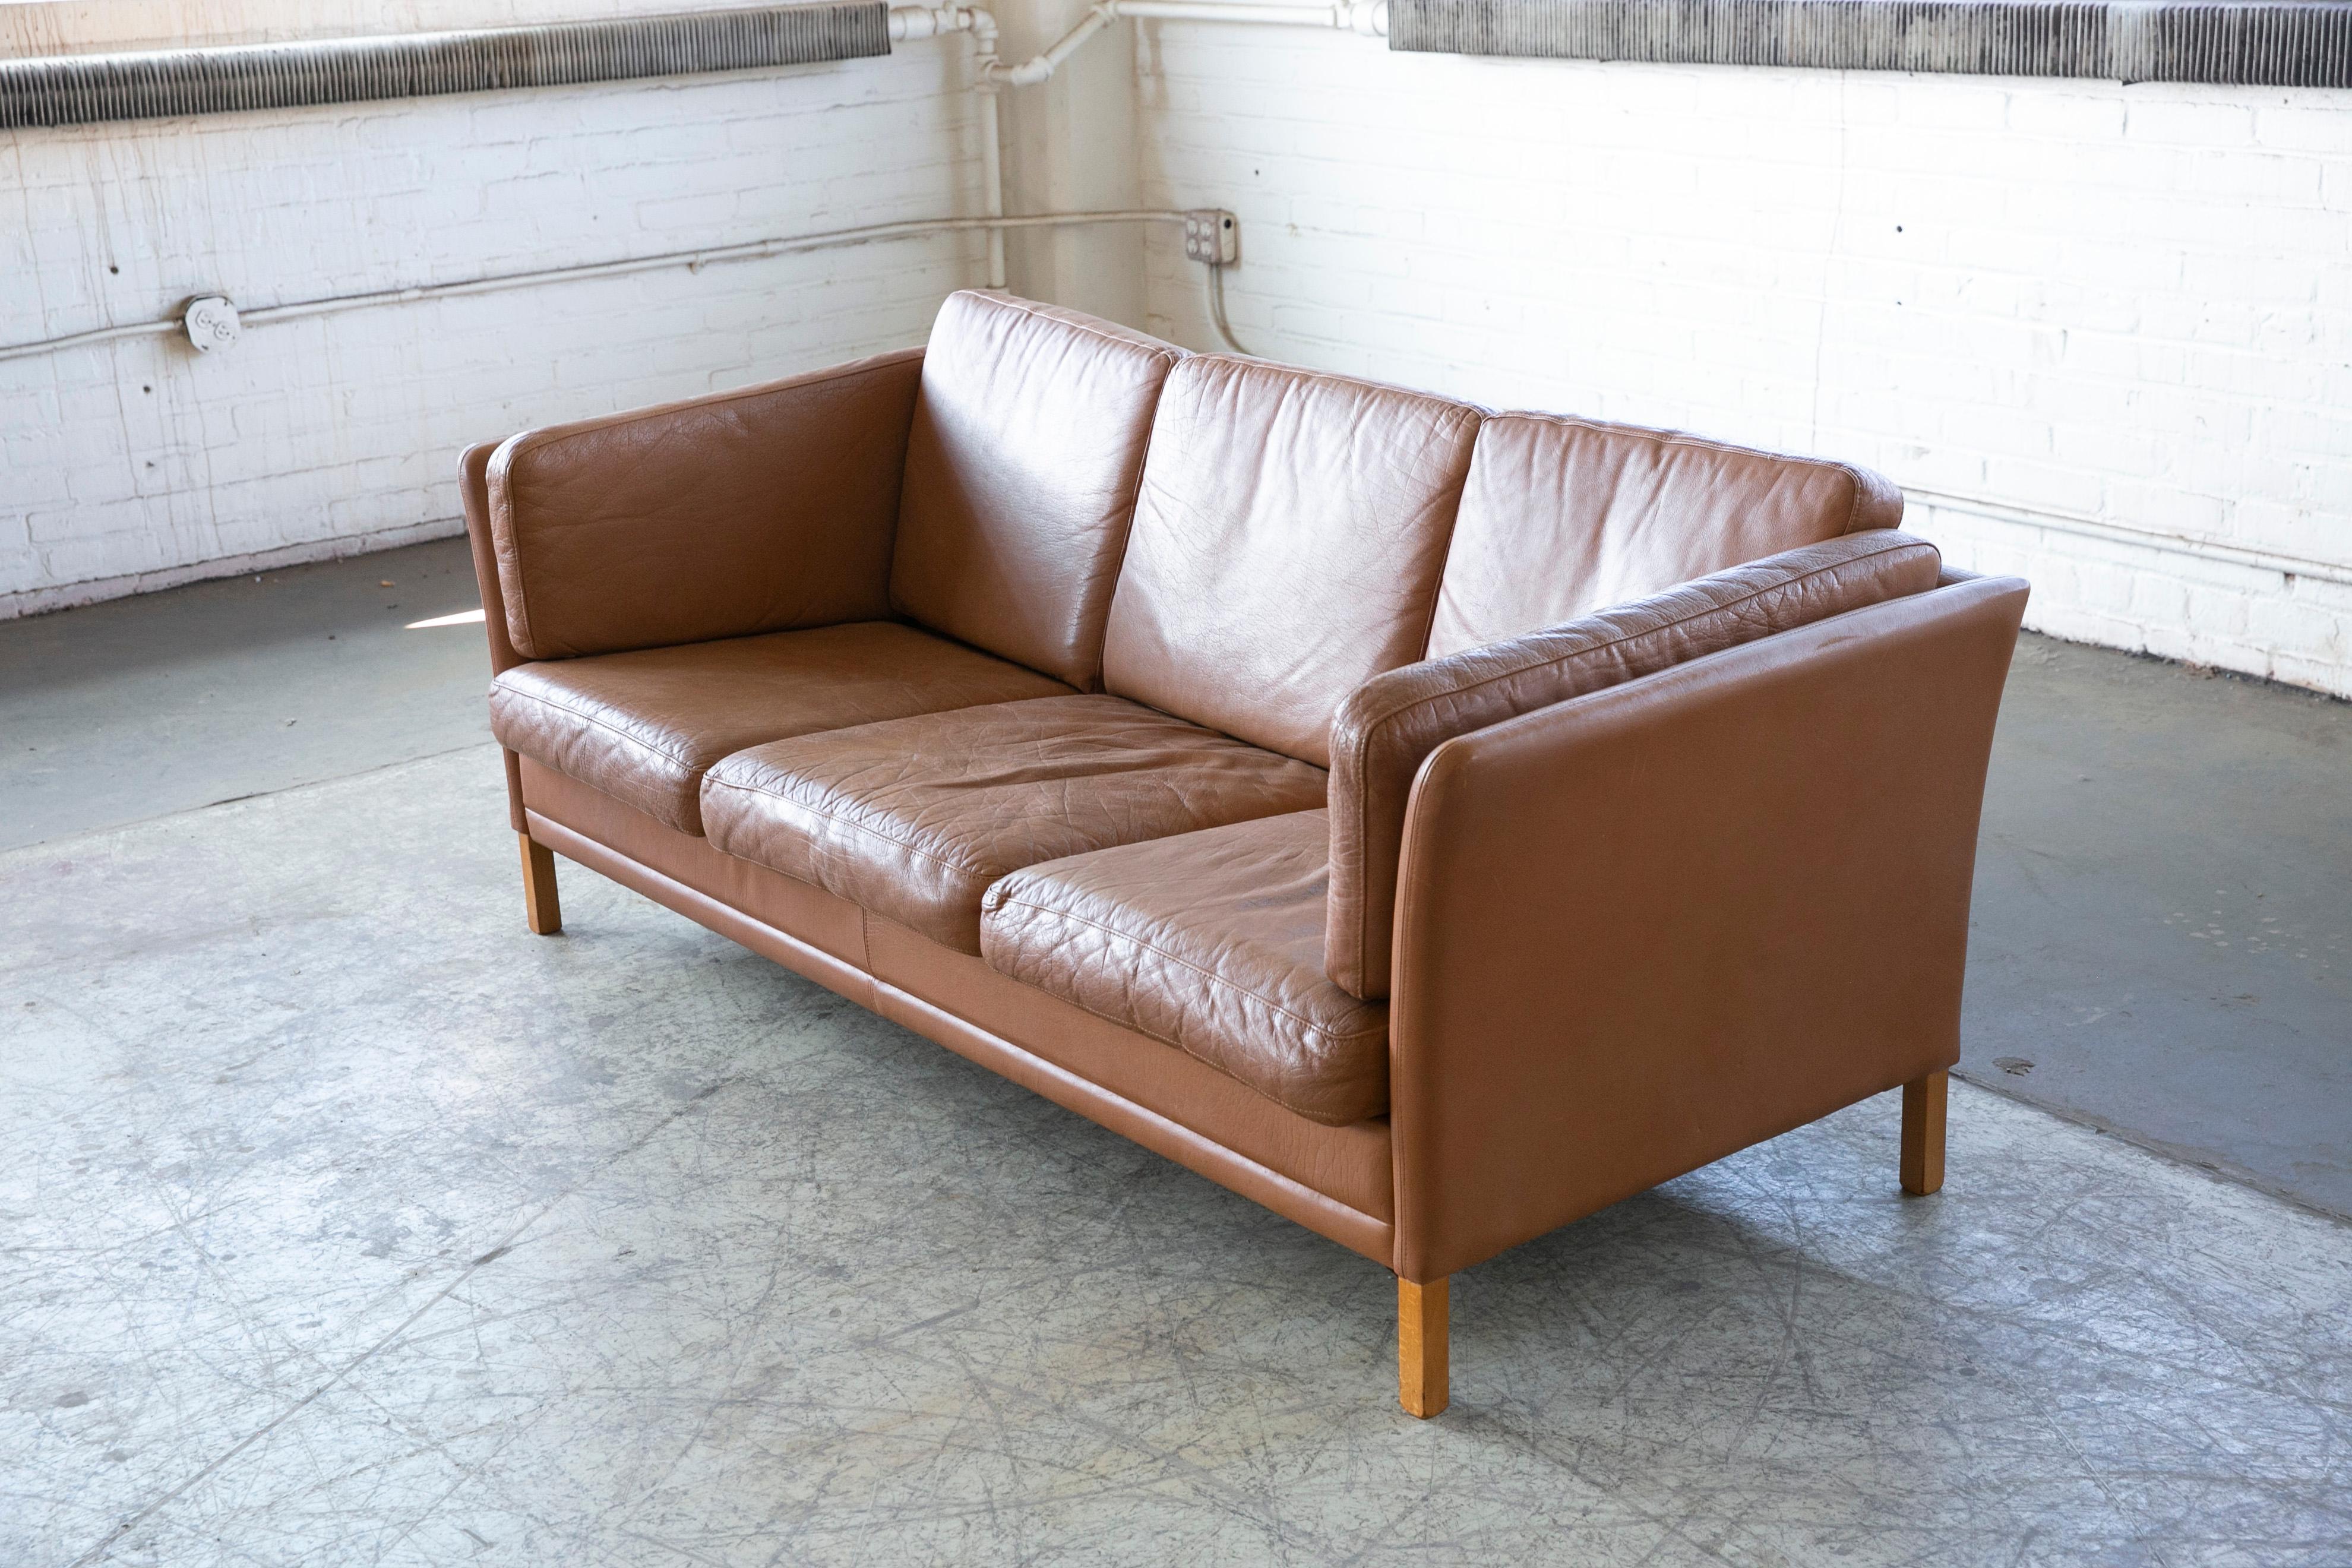 classic leather sofa colors